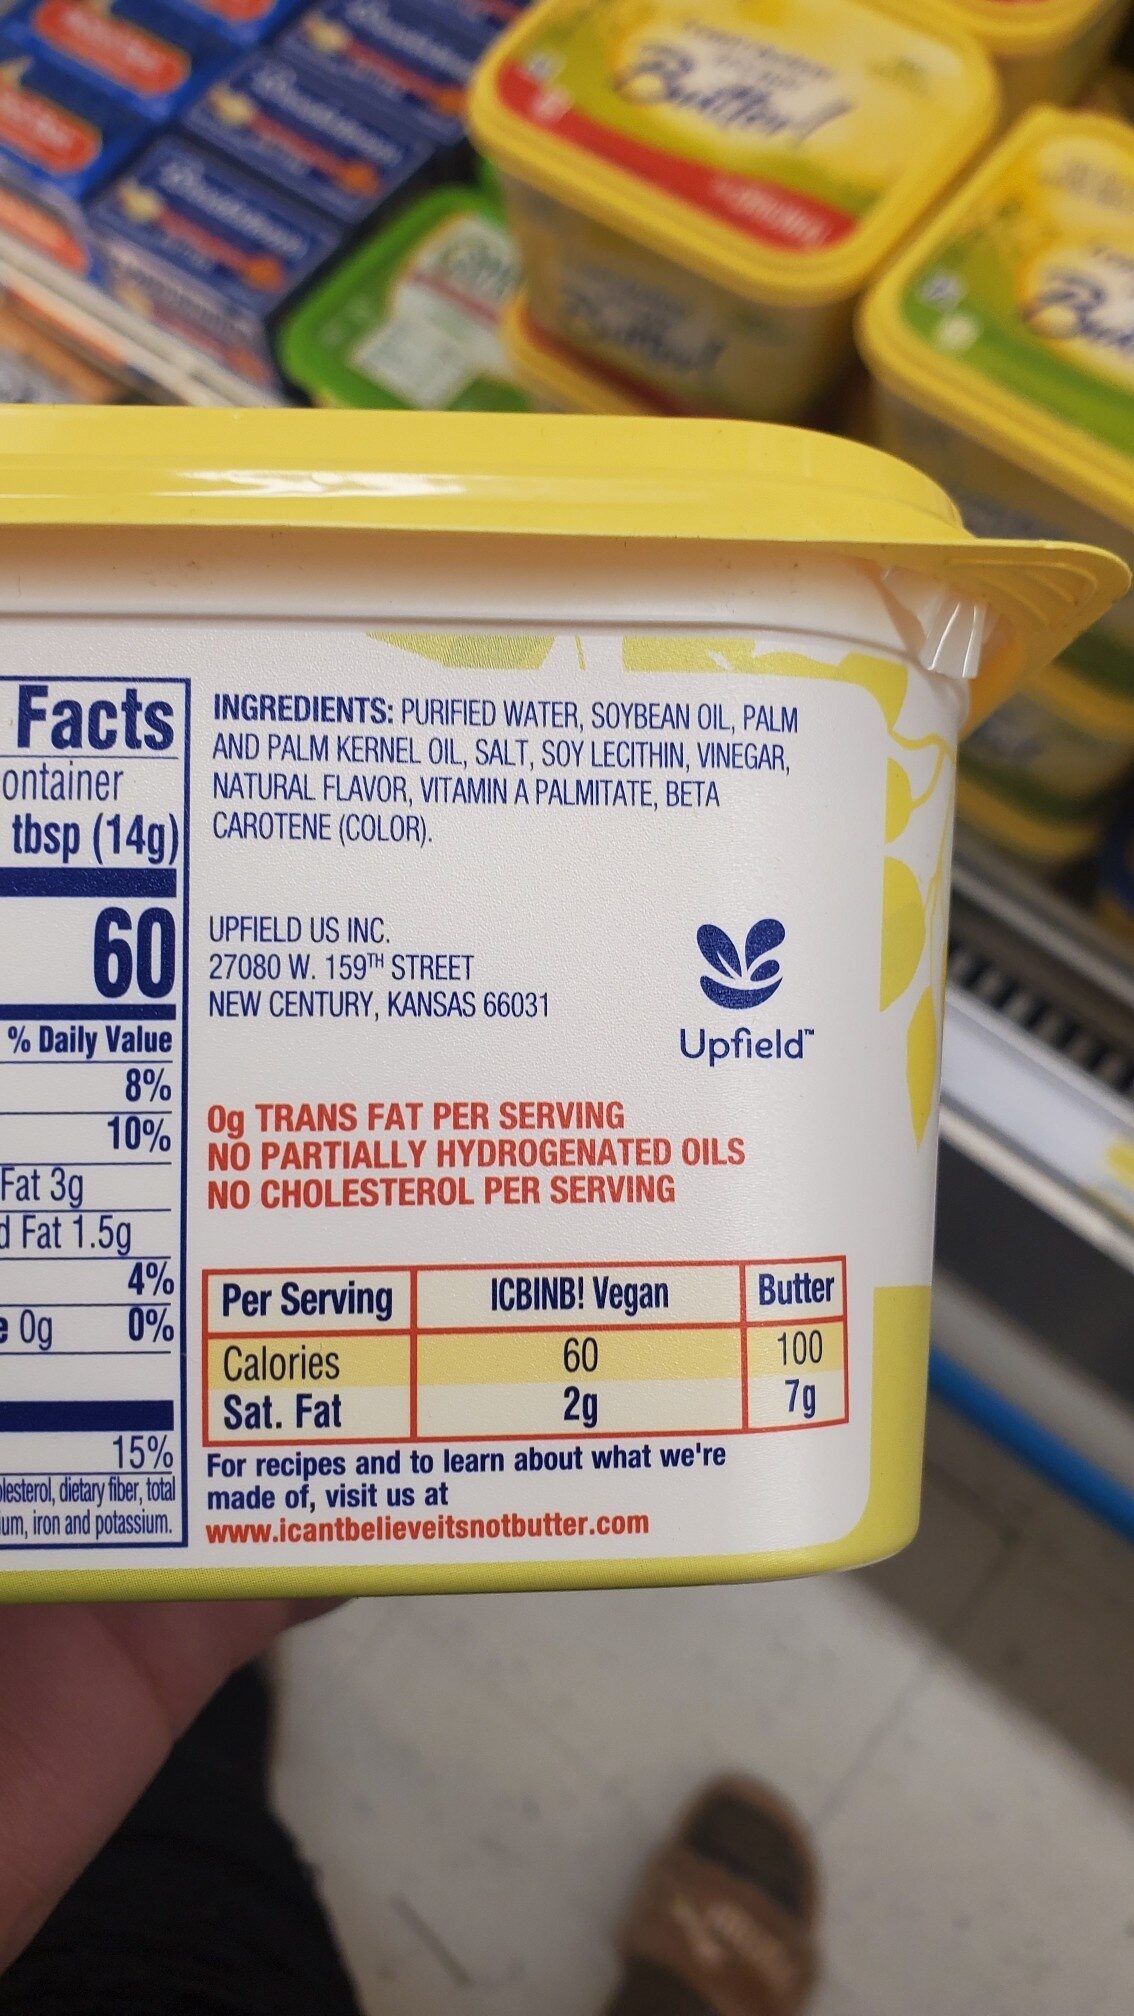 45% Vegetable Oil Spread, It'S Vegan - Ingredients